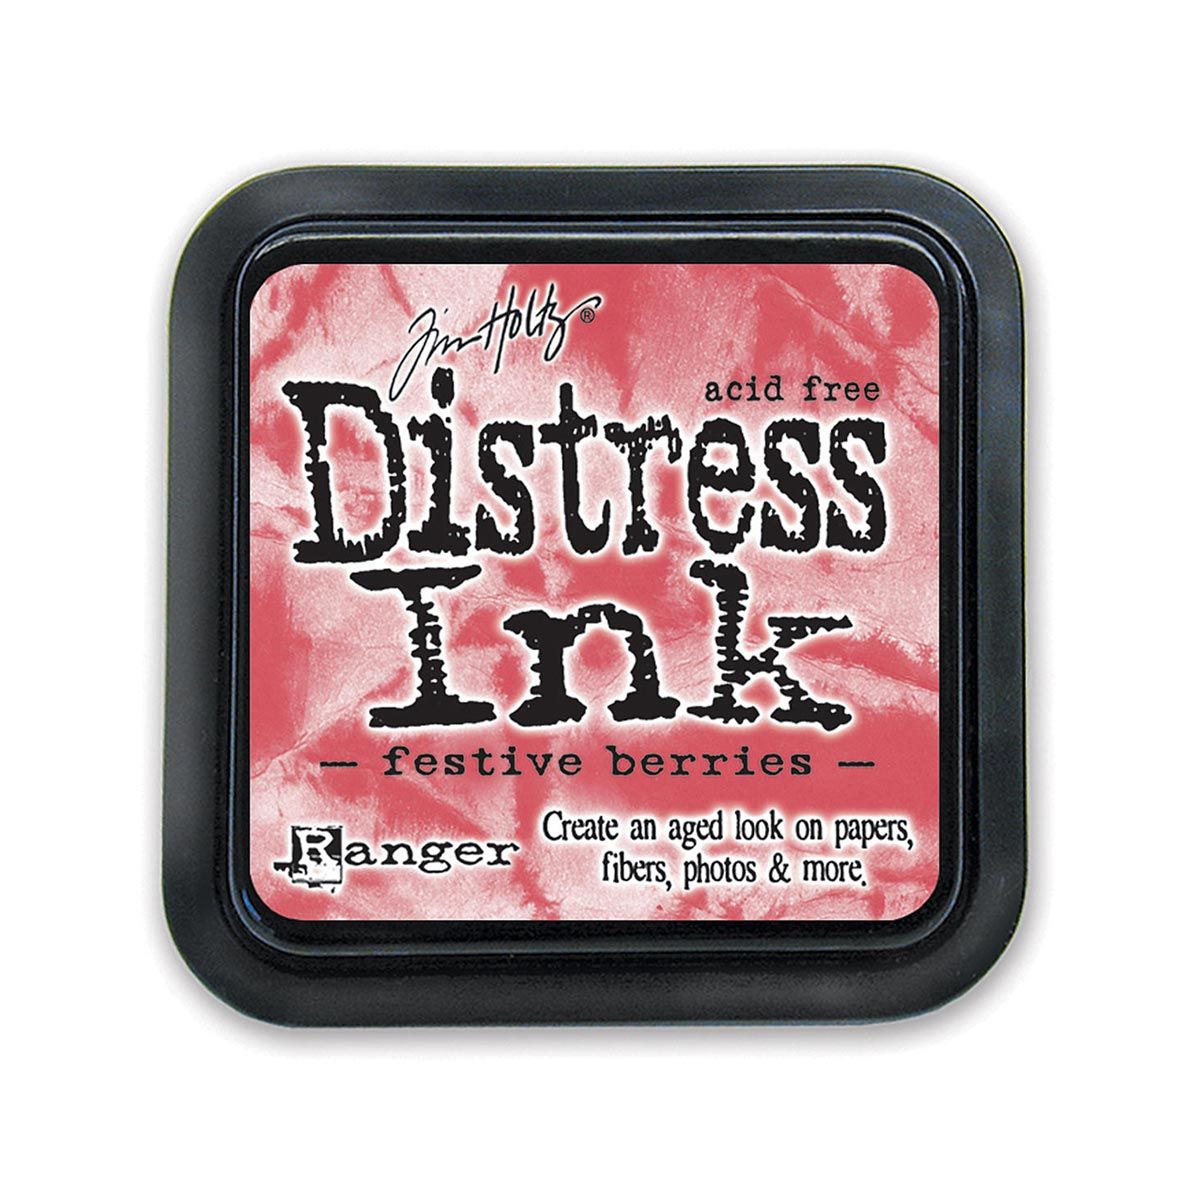 Tim Holtz Mini Distress Ink Pad, Festive Berries 1x1-in